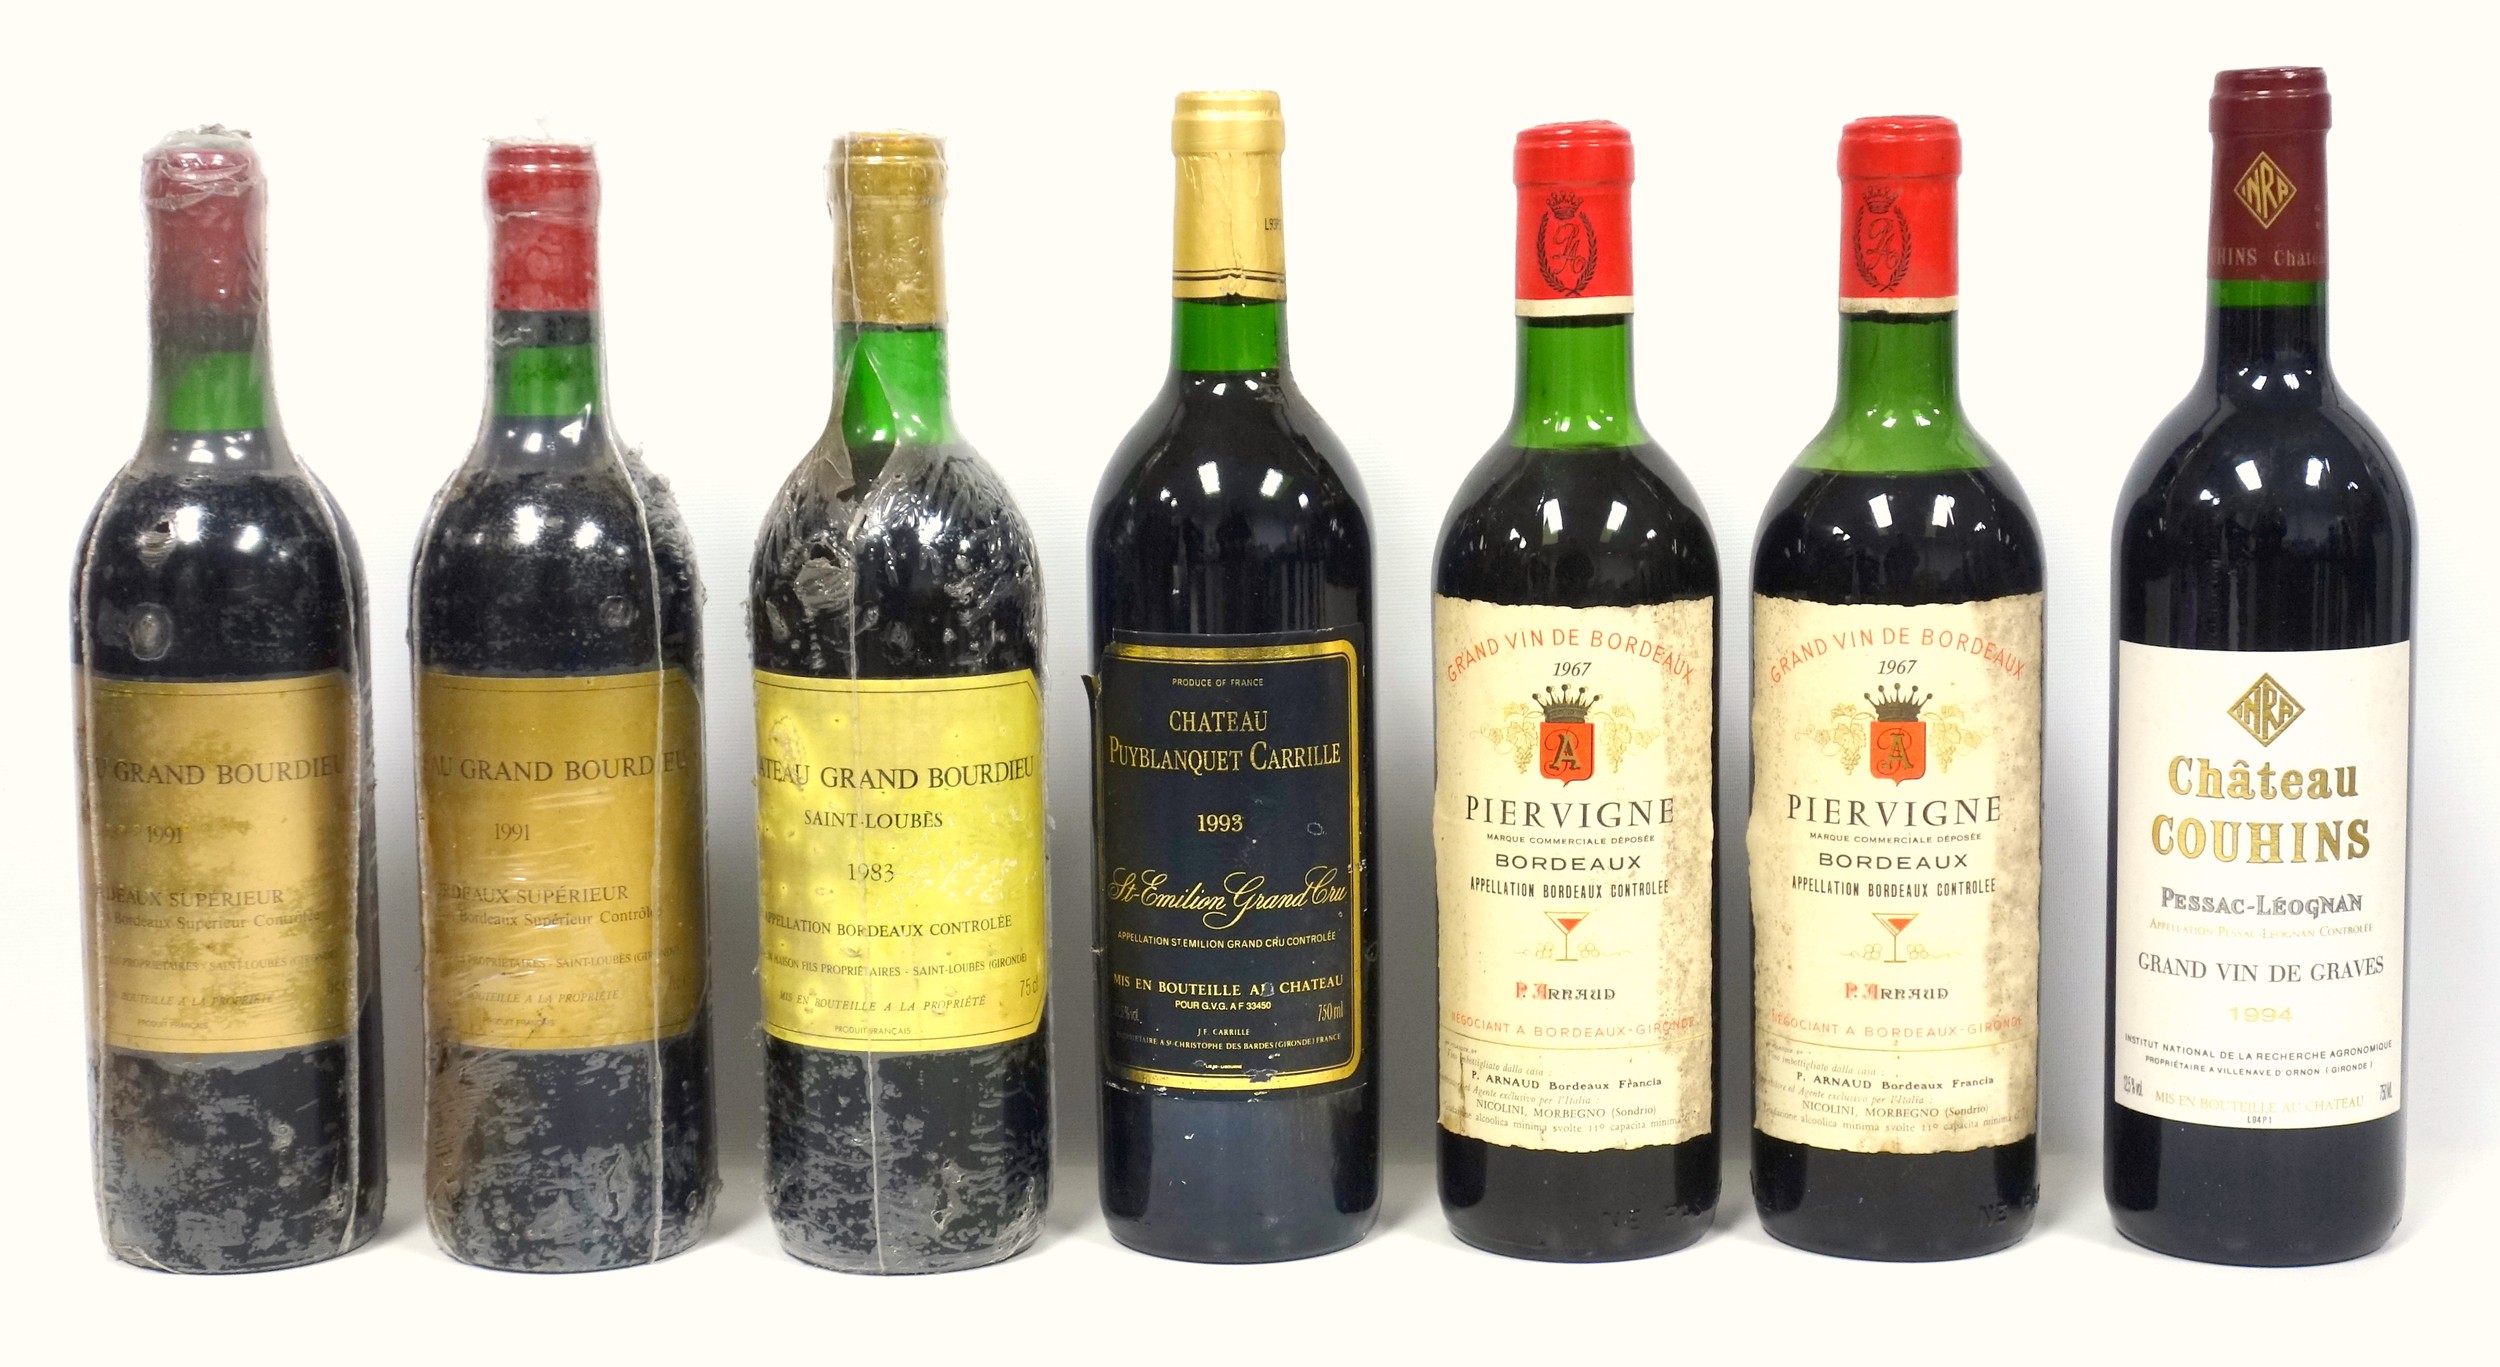 6 bottles Domaine de Rochemond, Cotes du Rhone, 2012 (inc. 3 bottles Vielles Vignes), gold medal,